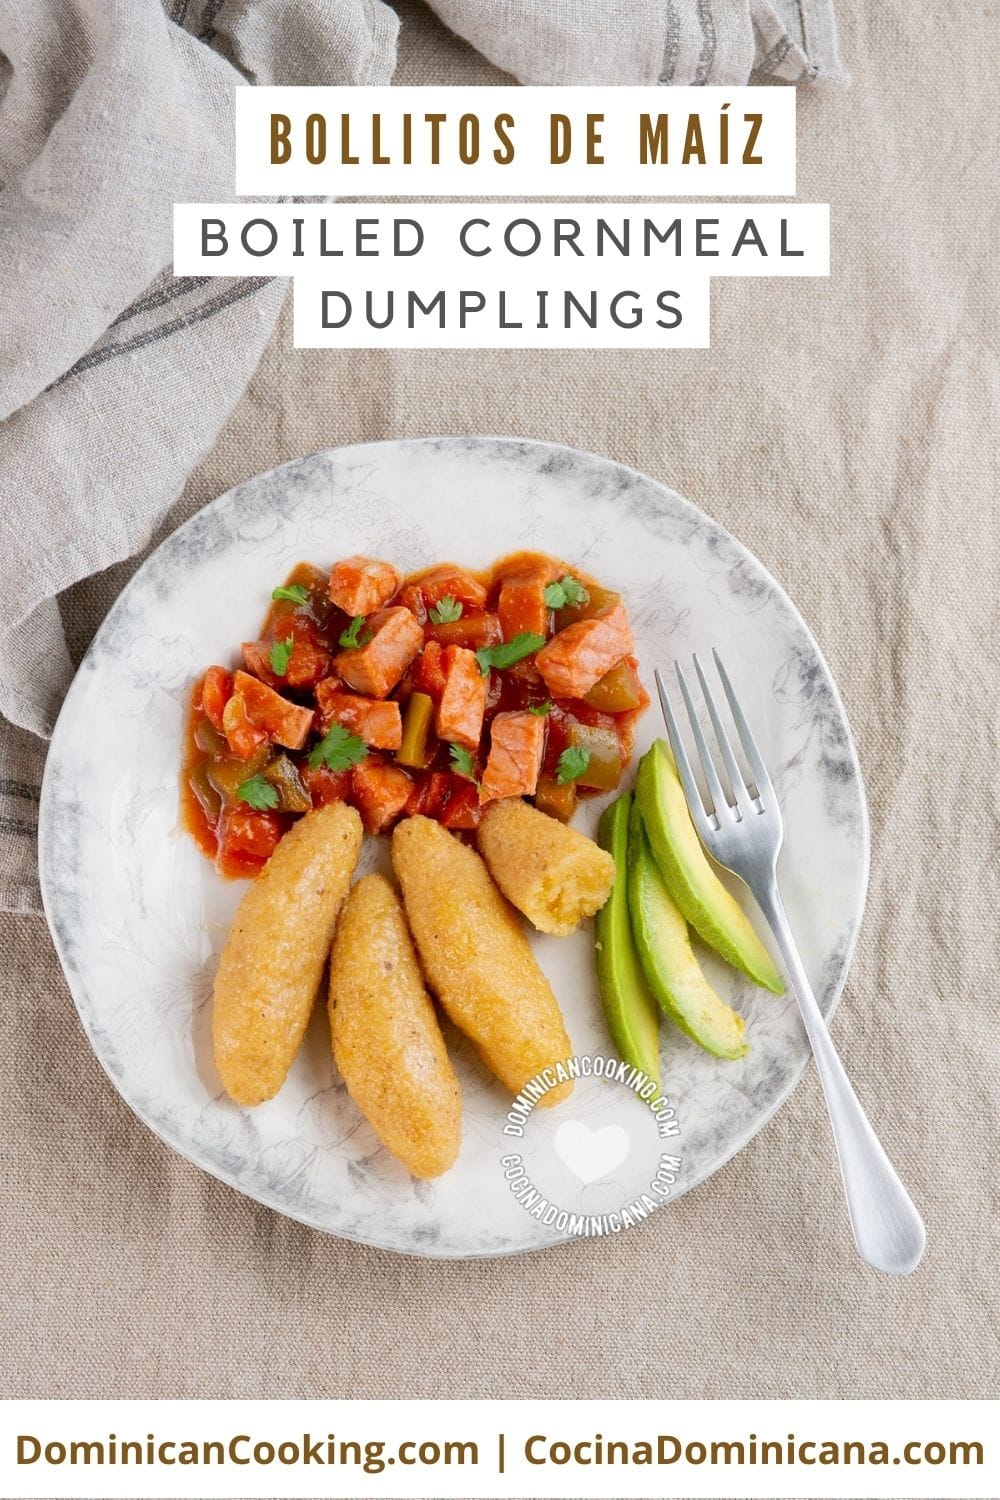 Boiled cornmeal dumplings recipe.